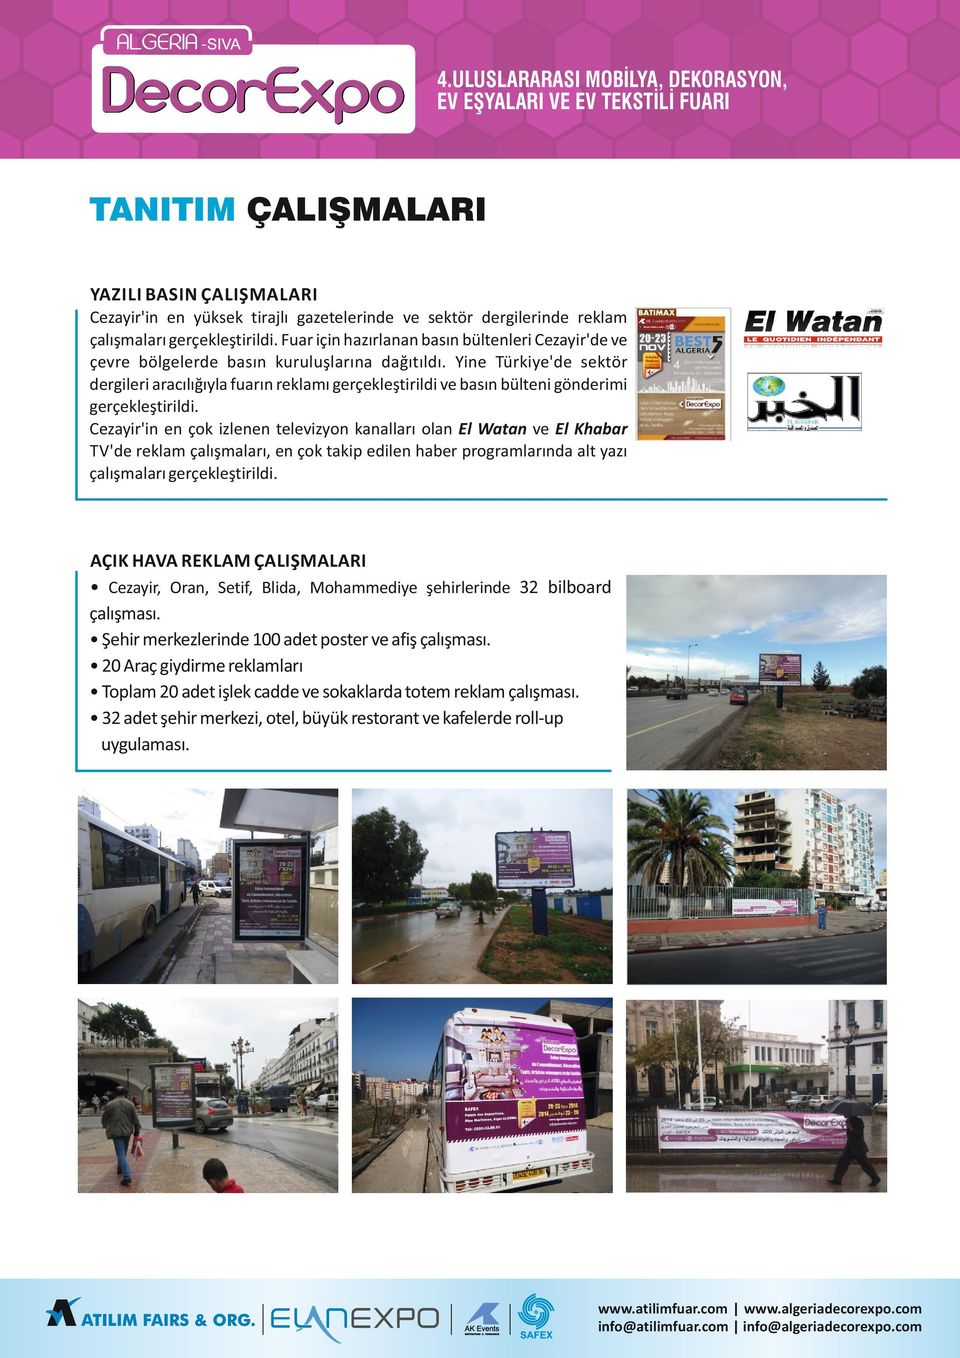 Yine Türkiye'de ektör dergileri aracılığıyla fuarın reklamı gerçekleştirildi ve baın bülteni gönderimi gerçekleştirildi.